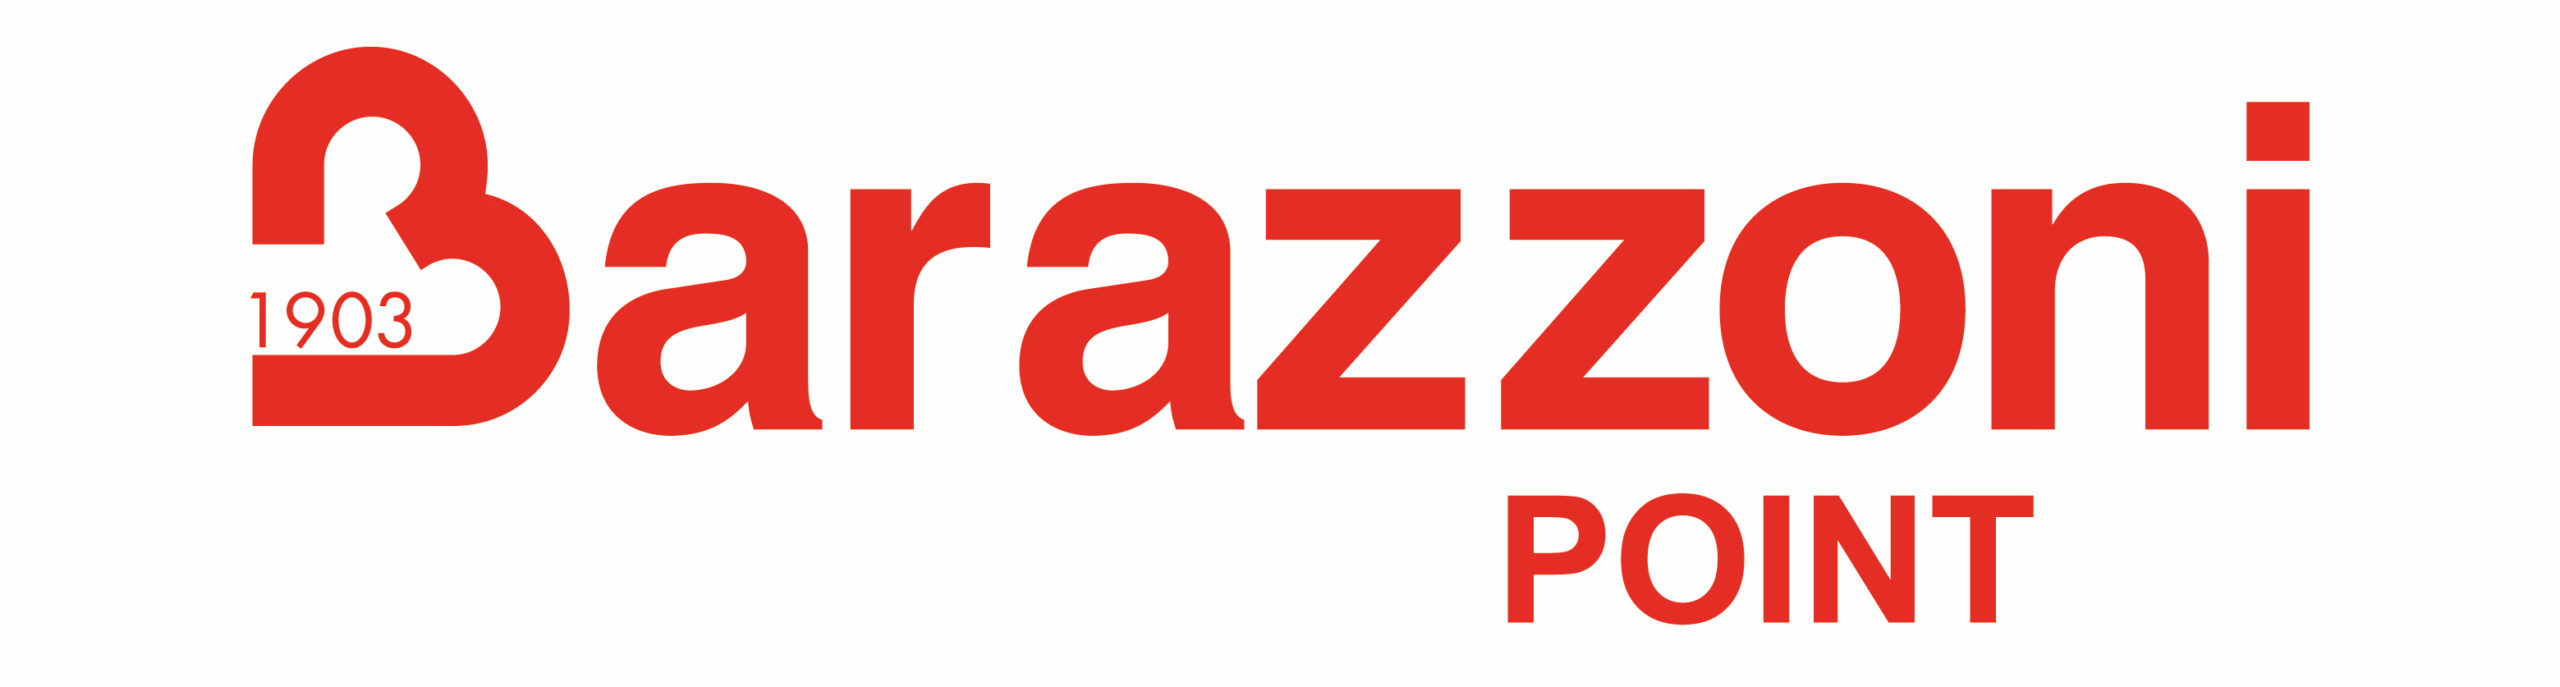 Logo Barazzoni point